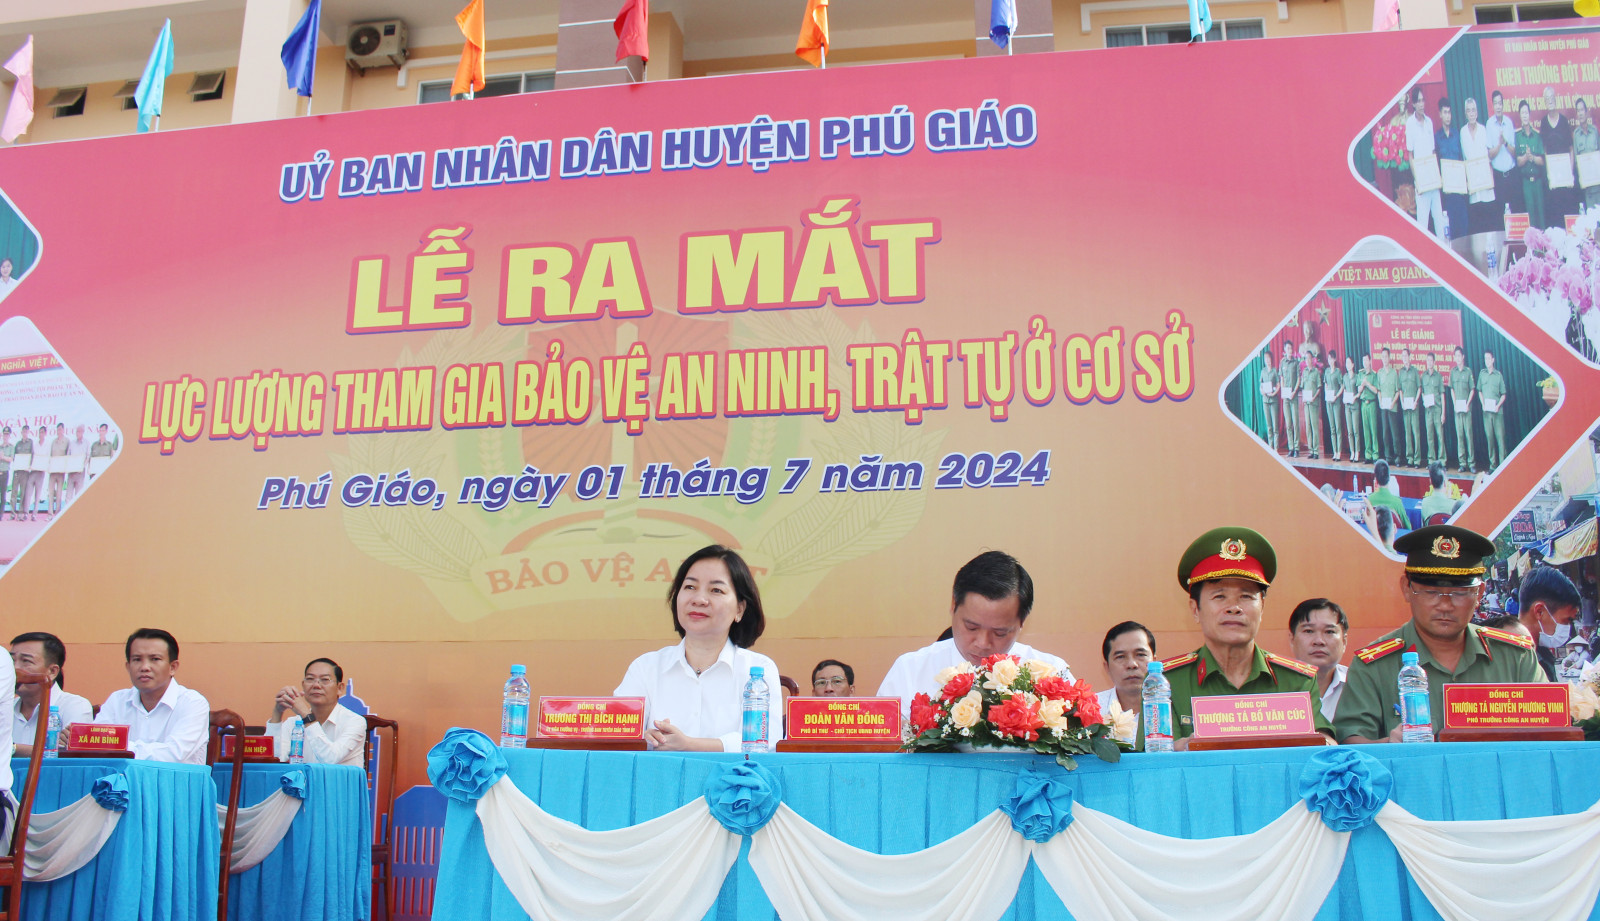 Đồng chí Trương Thị Bích Hạnh cùng lãnh đạo huyện Phú Giáo tham dự lễ ra mắt.